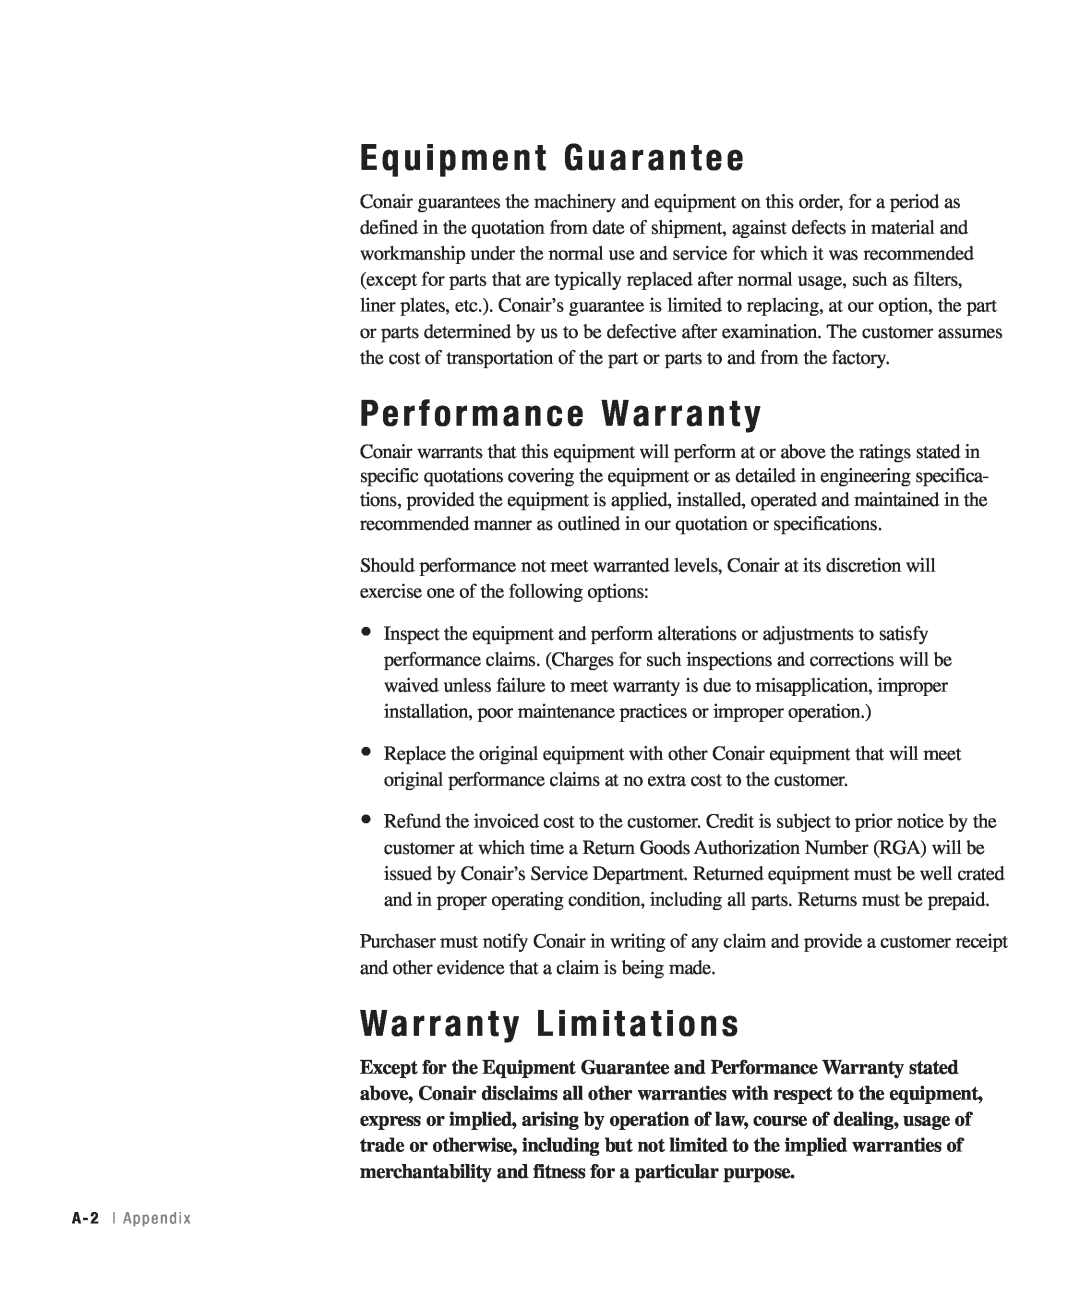 Conair CHS-810 manual Equipment Guarantee, Performance Warranty, Warranty Limitations, A - 2 l A p p e n d i 